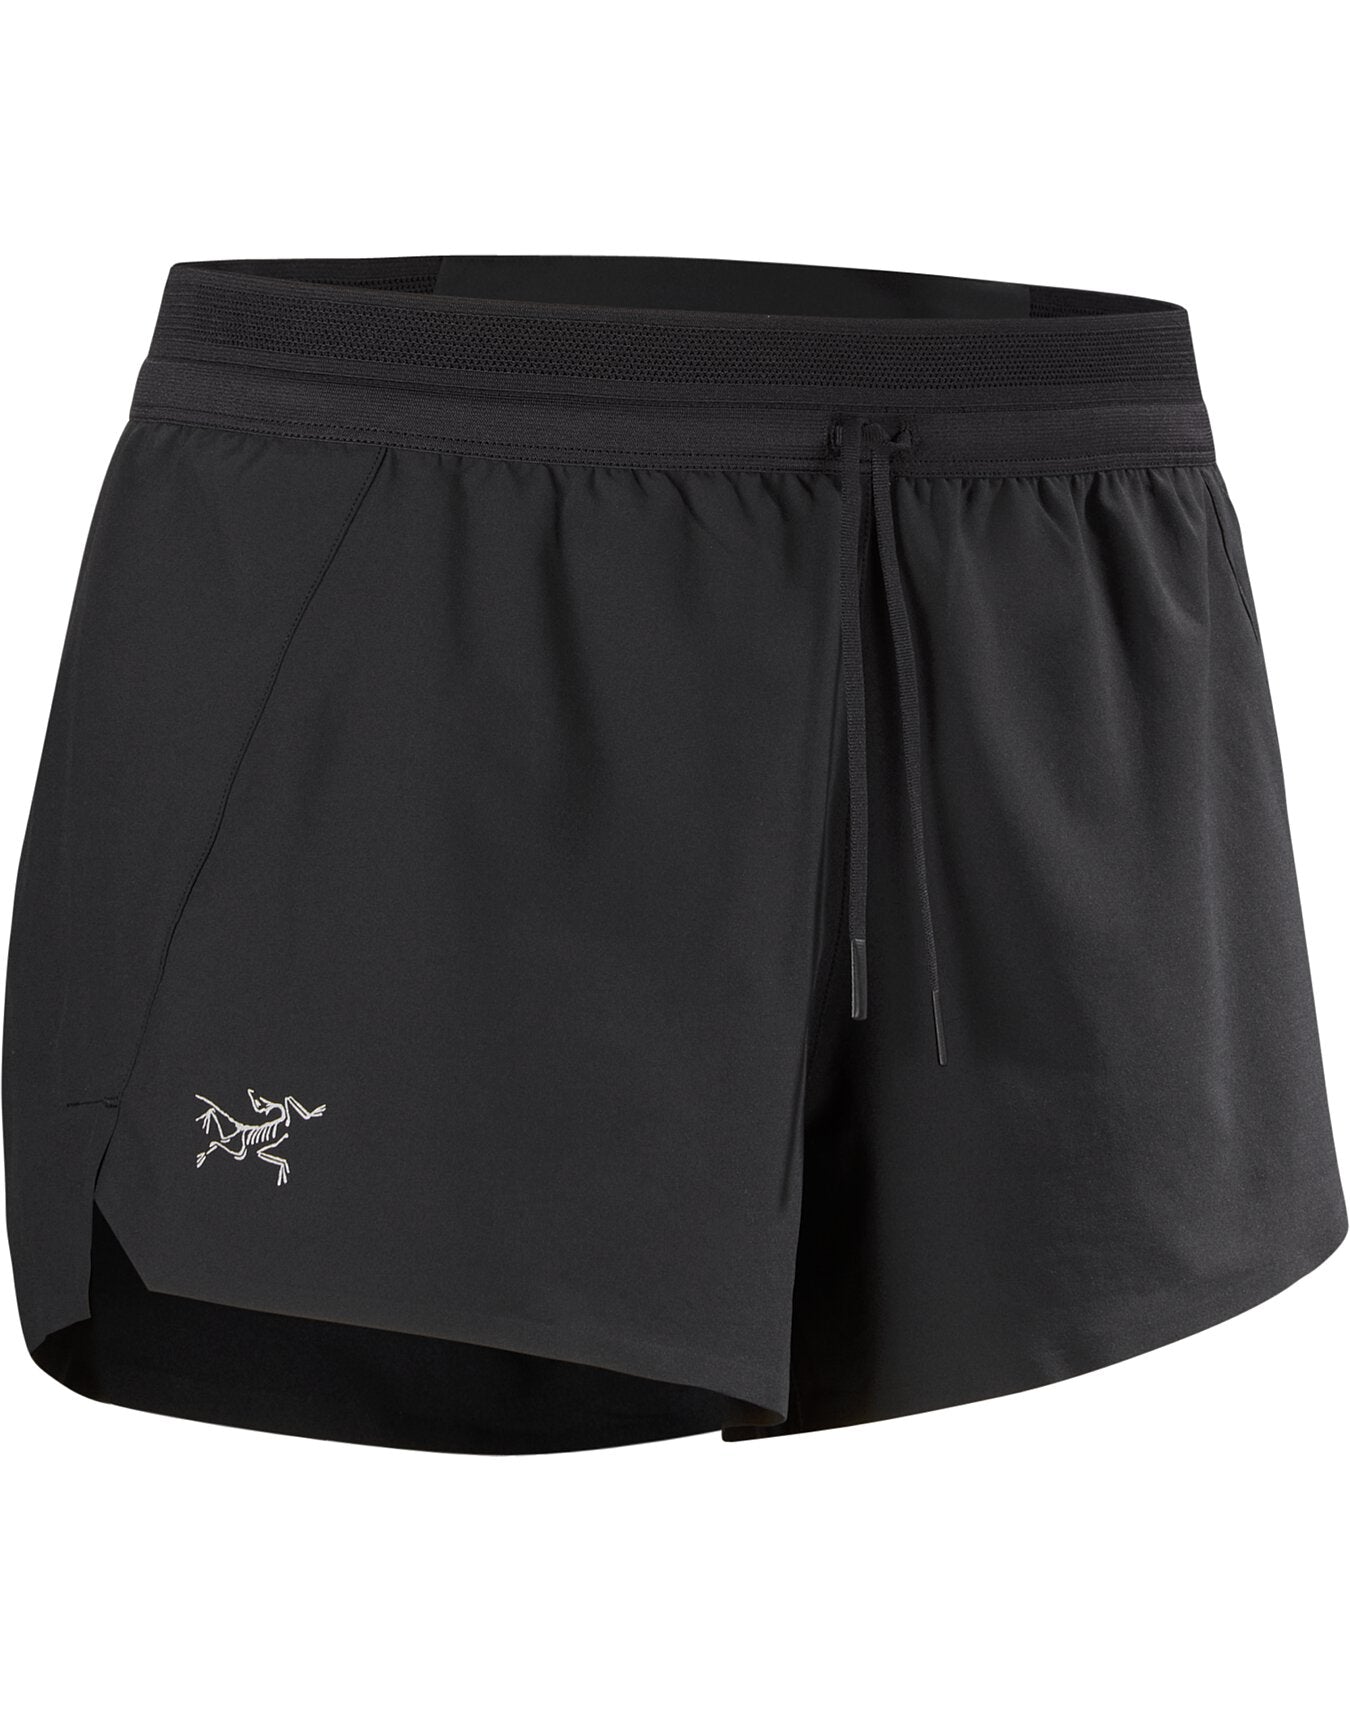 Arc'teryx Women's Norvan 3" Shorts